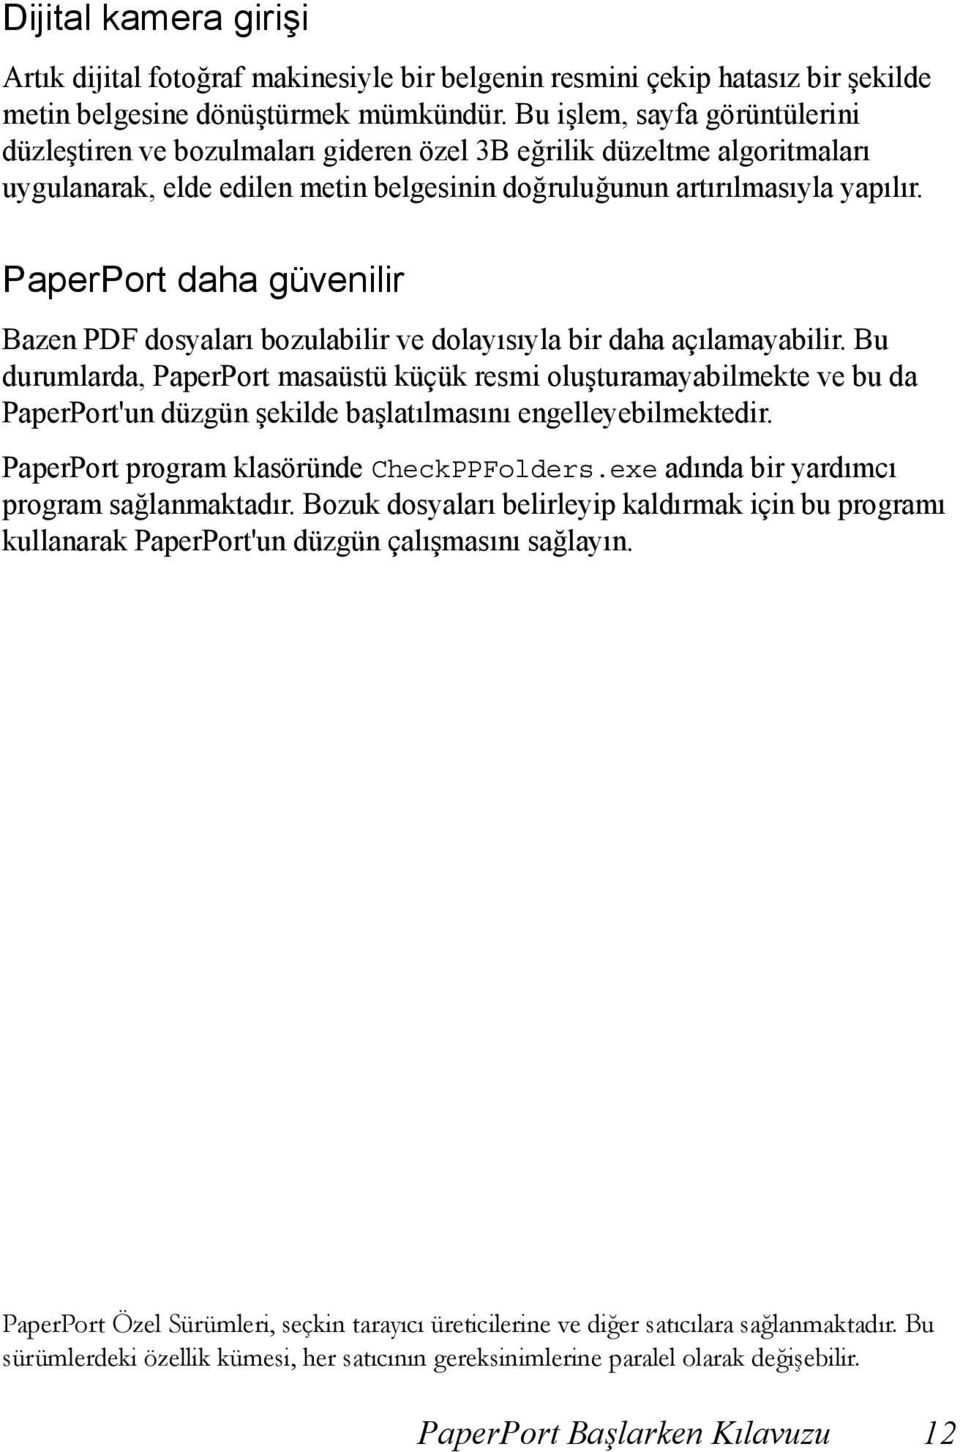 PaperPort daha güvenilir Bazen PDF dosyaları bozulabilir ve dolayısıyla bir daha açılamayabilir.